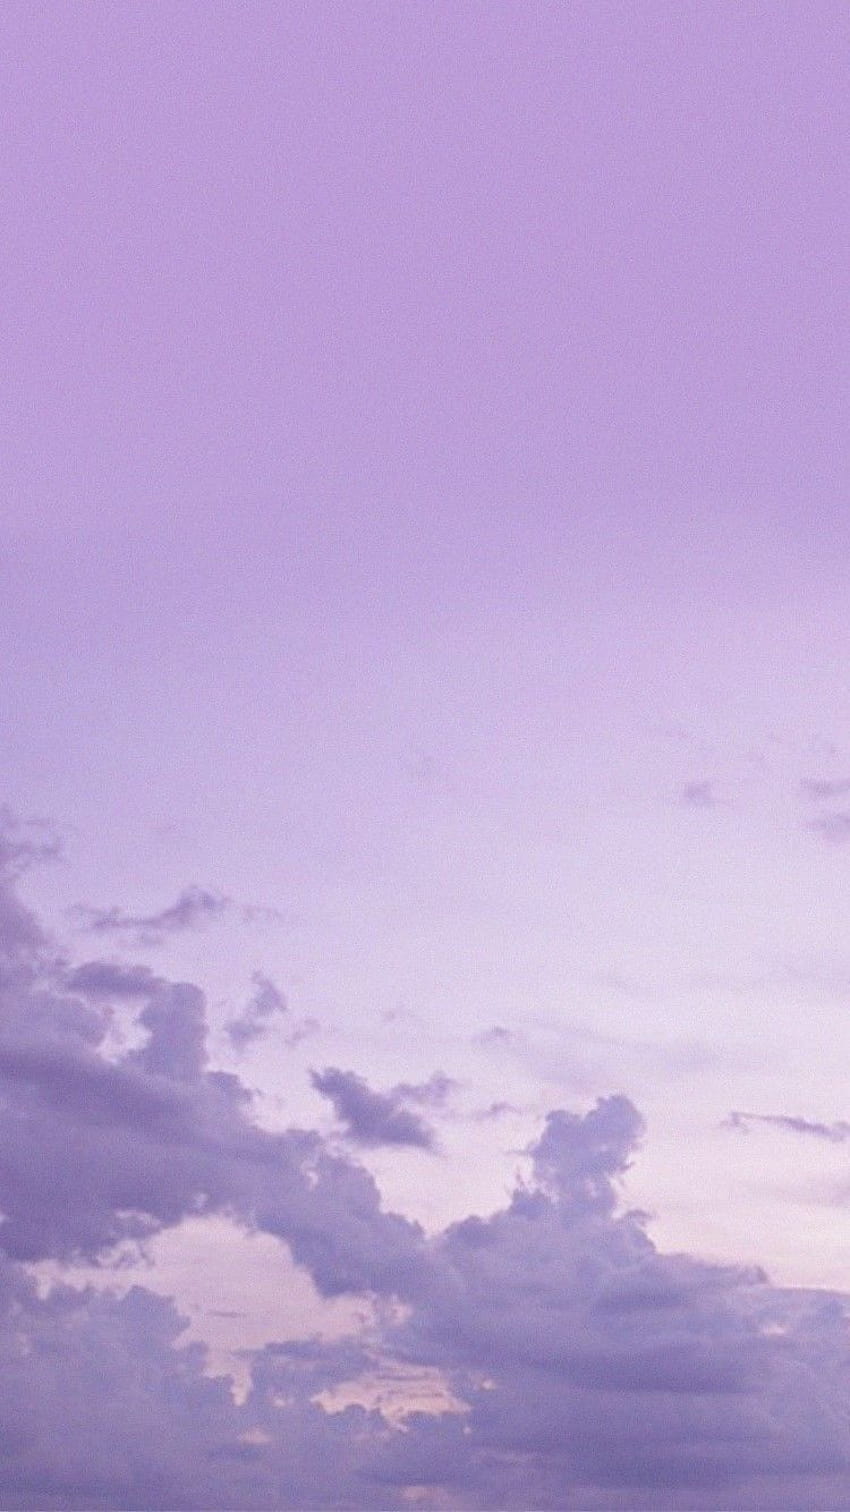 Hình nền tím pastel thẩm mỹ (Aesthetic Lavender Backgrounds Pastel Aesthetic Pastel Purple): Bạn muốn cập nhật hình nền cho điện thoại hoặc máy tính của mình với một sự lựa chọn đẹp mắt, duyên dáng và thẩm mỹ? Hãy chiêm ngưỡng bộ hình nền tím pastel này - những màu sắc tươi sáng và hài hòa sẽ đem lại cho bạn không gian làm việc và giải trí hoàn hảo.